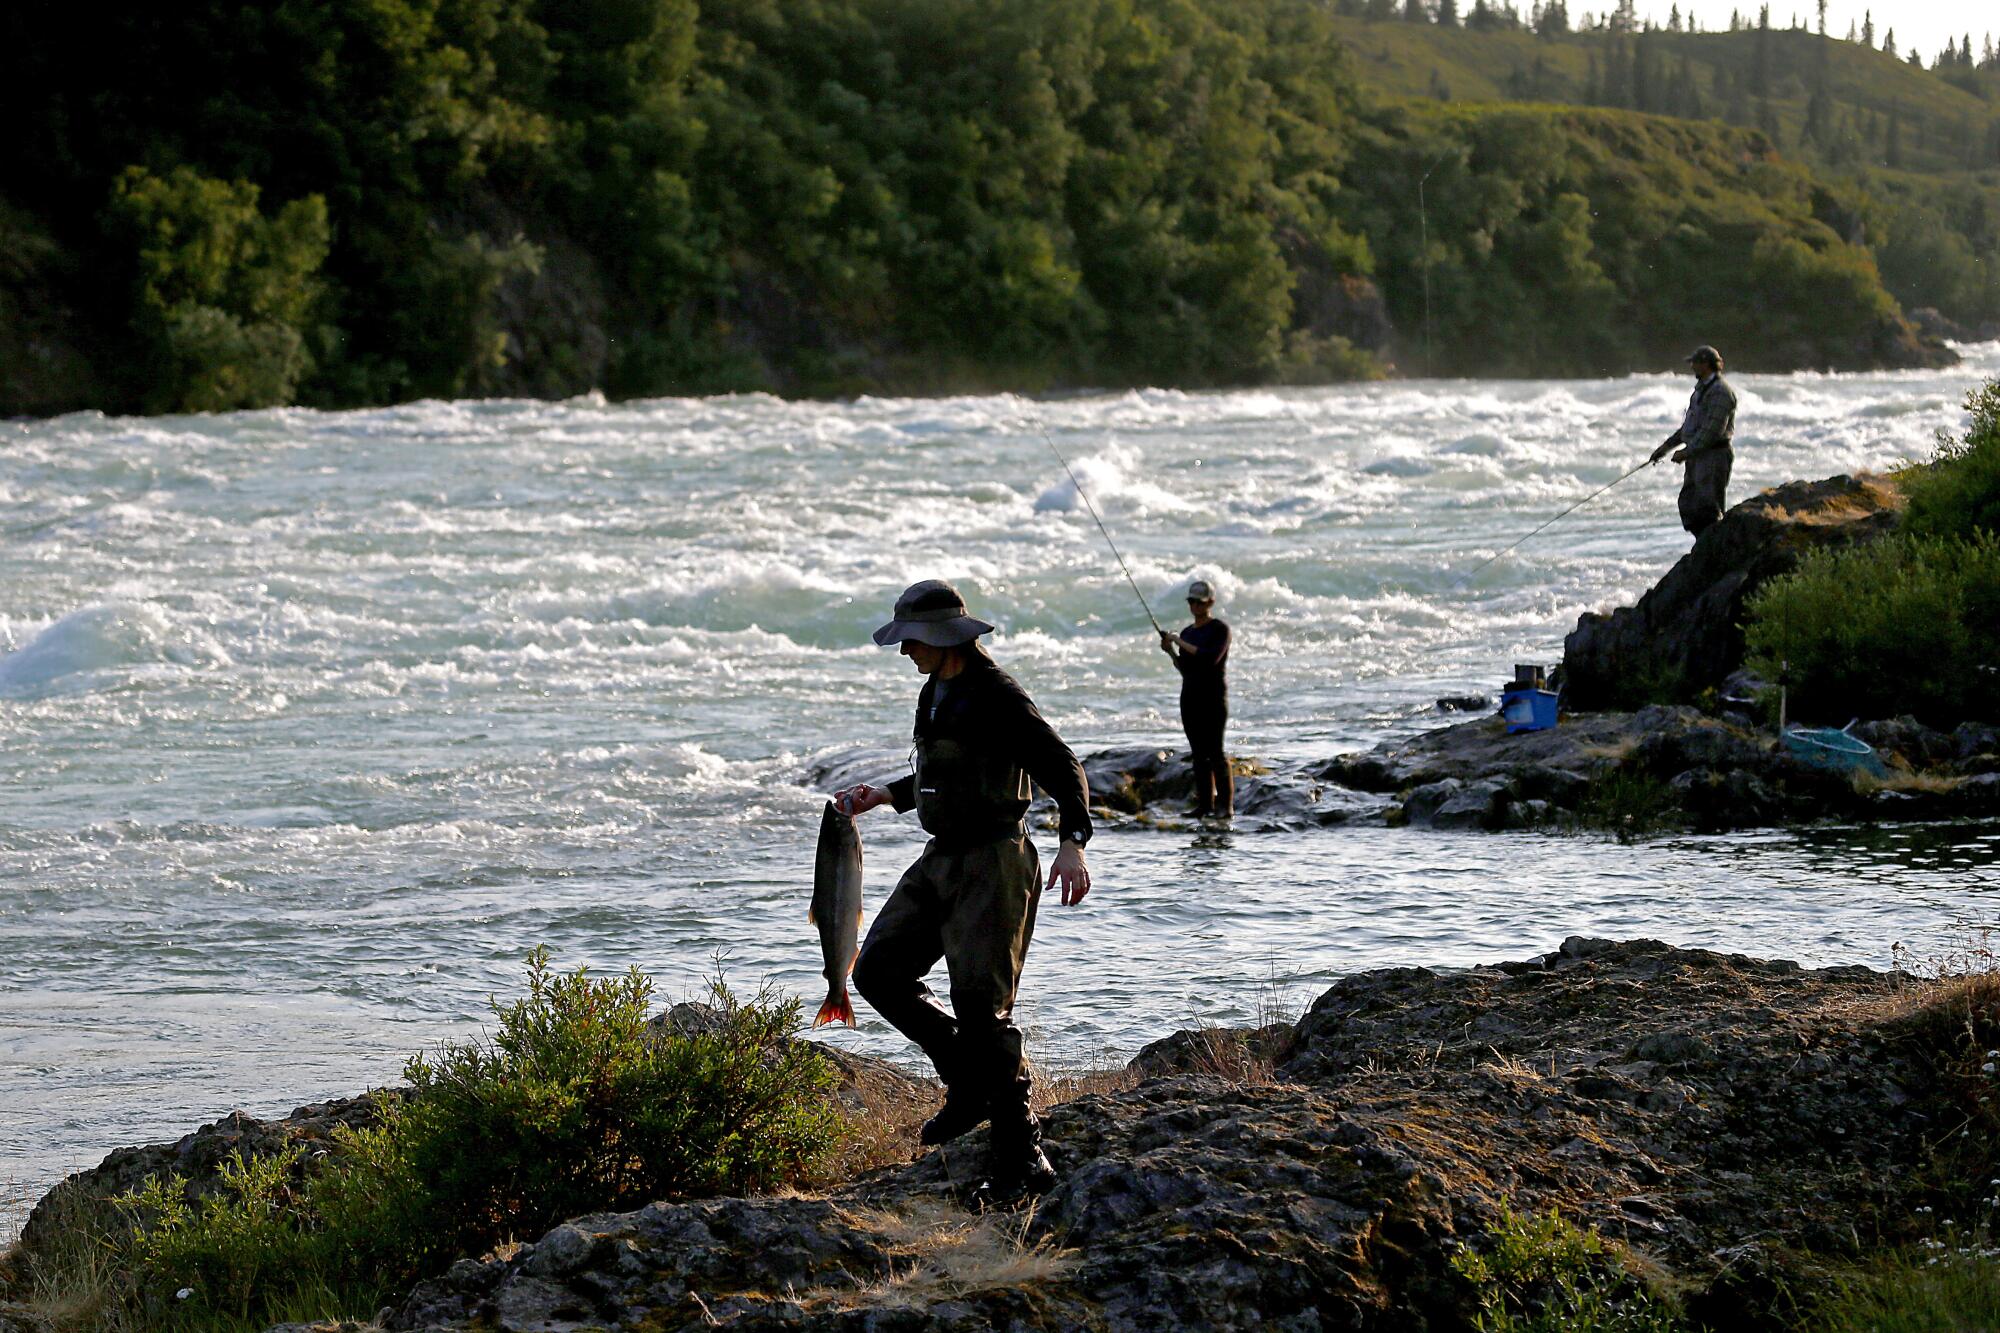 Fishing for sockeye salmon in the Newhalen River near Iliamna, Alaska.